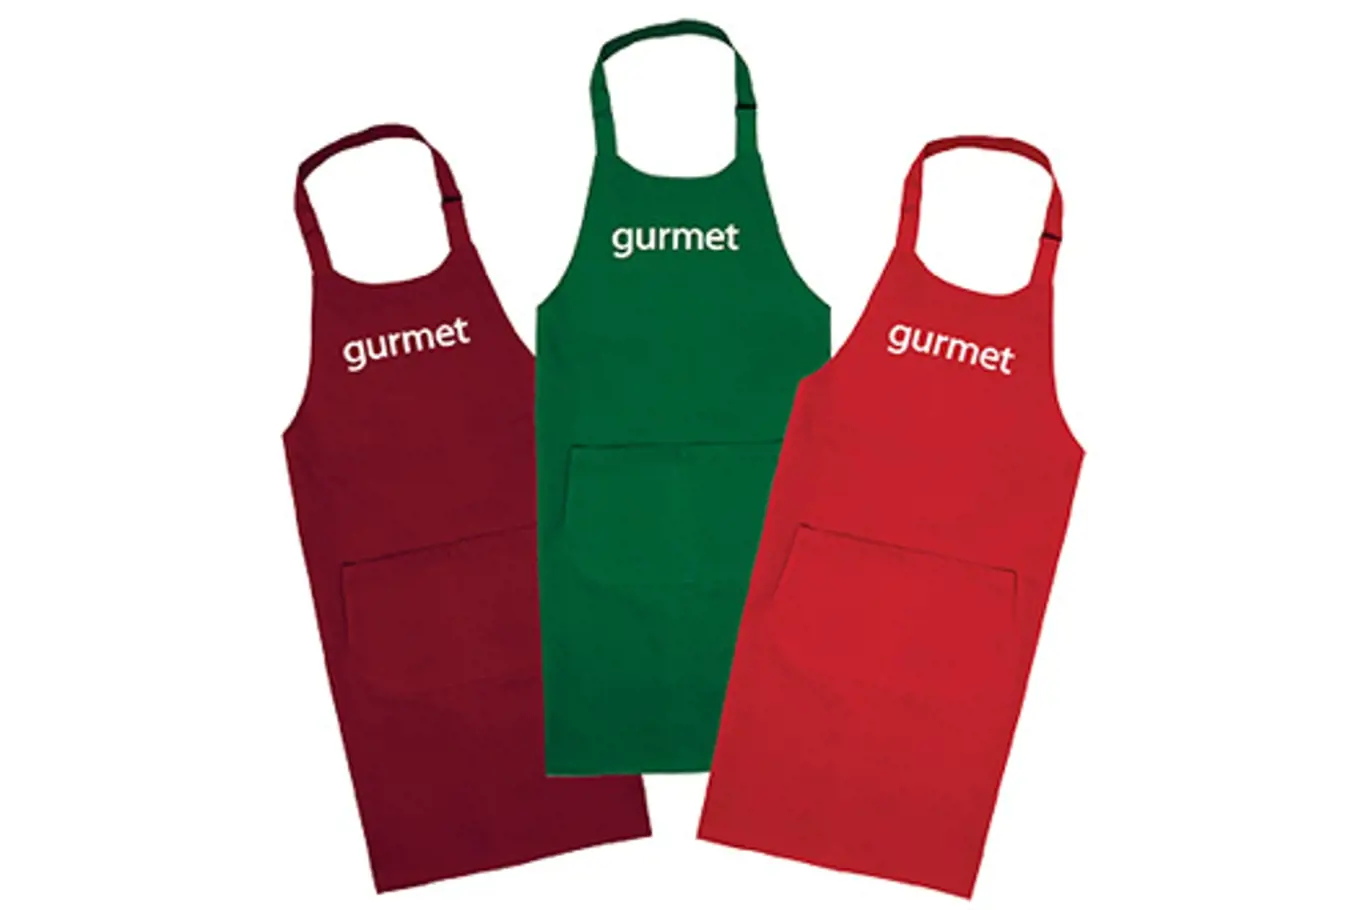 GURMET má pro své čtenáře kuchyňské zástěry